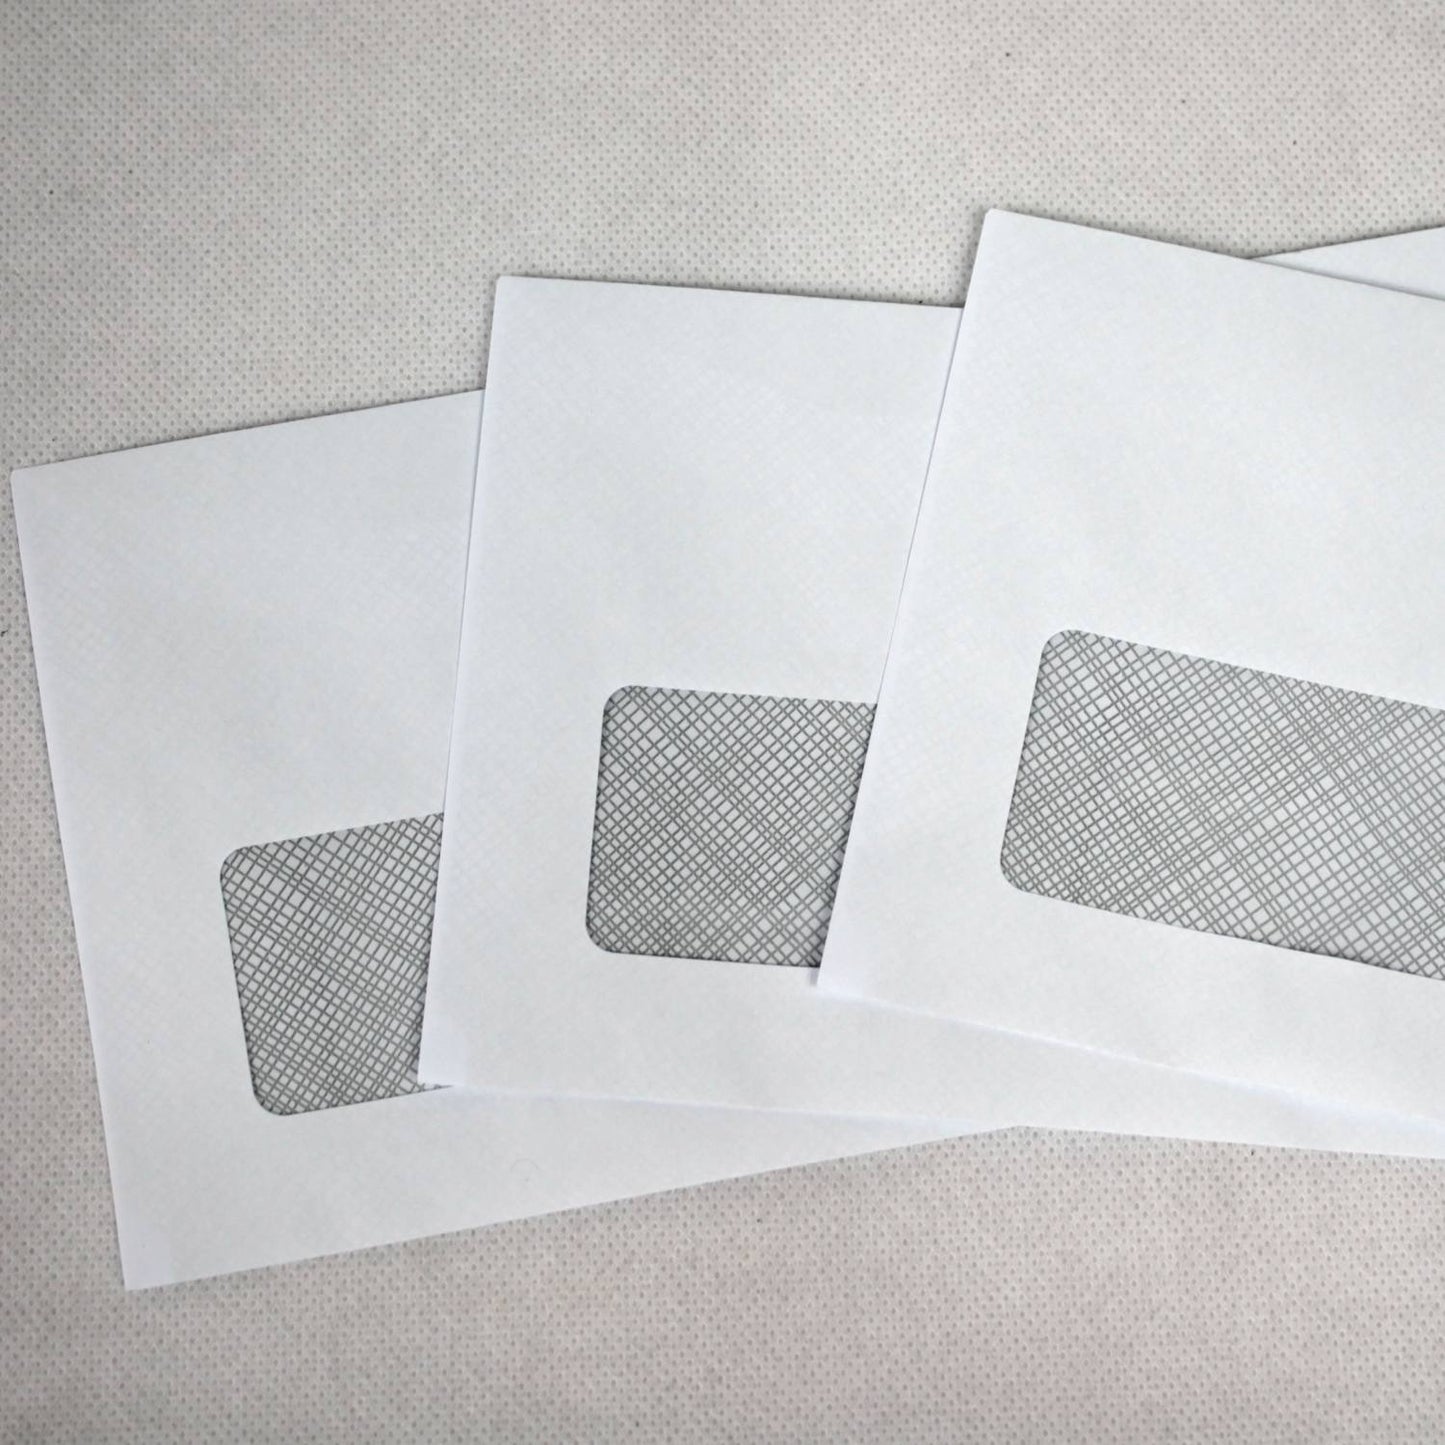 110x220mm DL White Gummed Envelopes (Window 35x90mm)